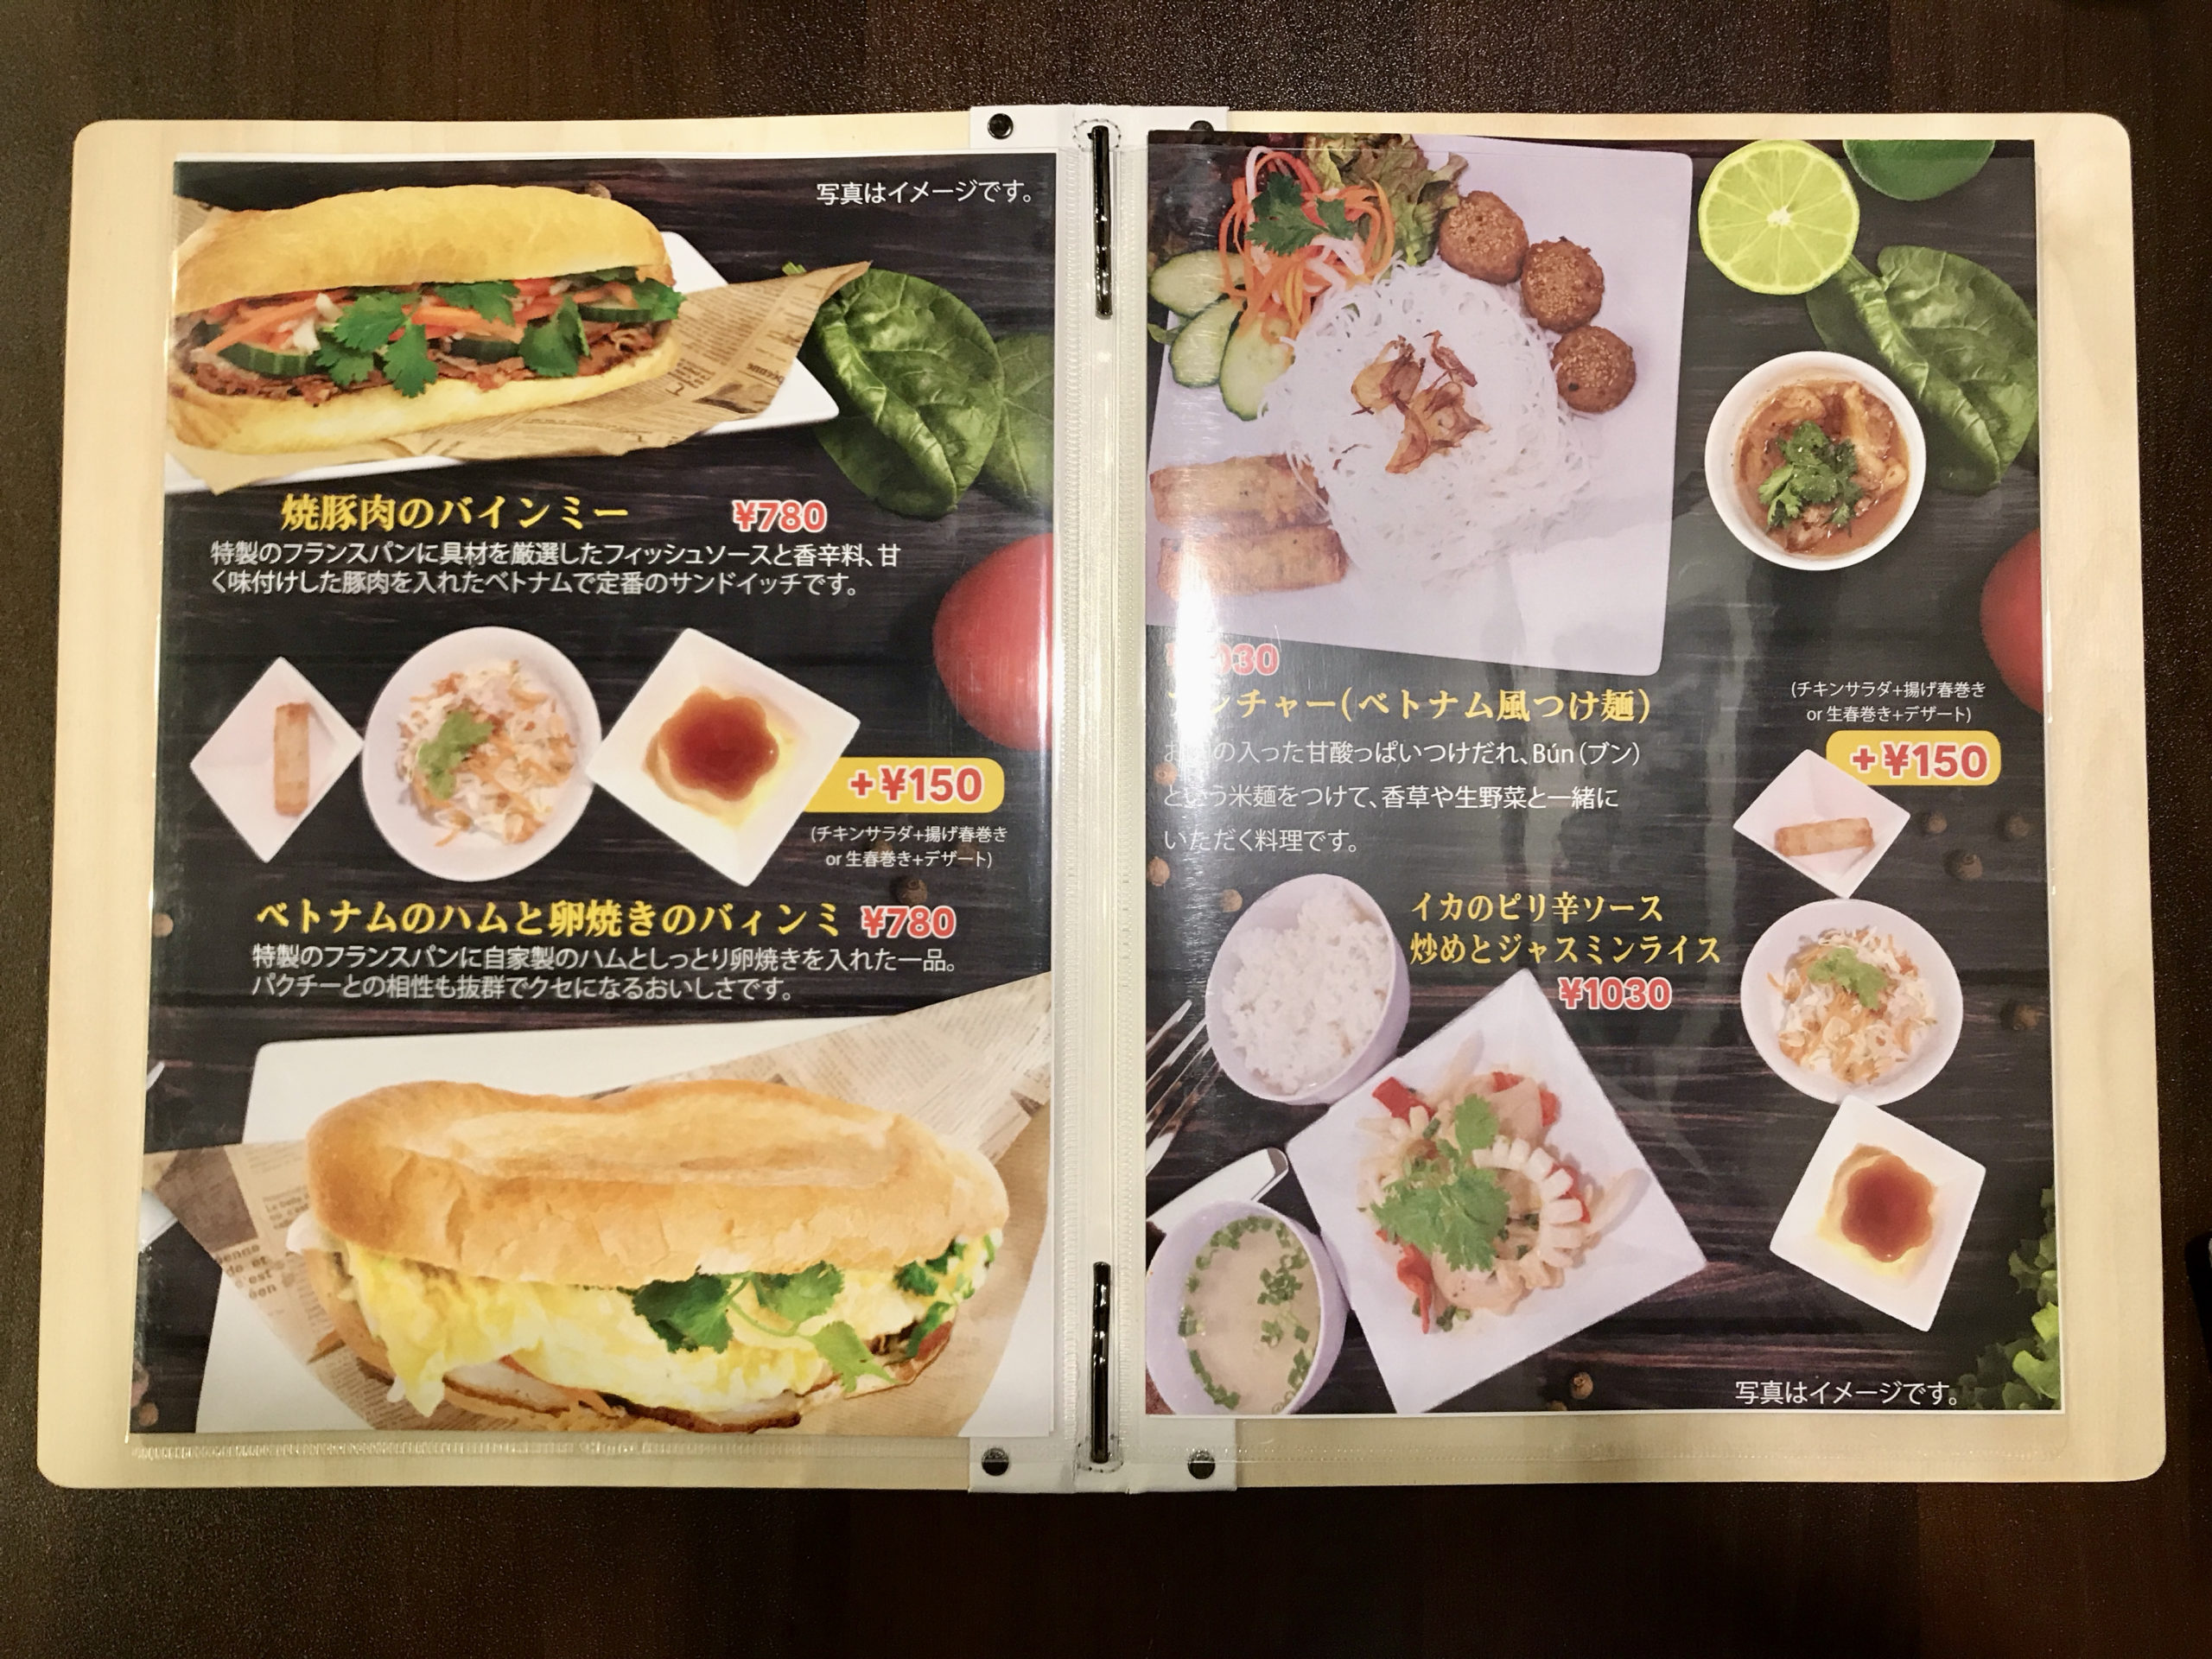 ランチ1030円 茅場町のコバサイゴンはヘルシーなベトナム料理店 お皿の上のアジア